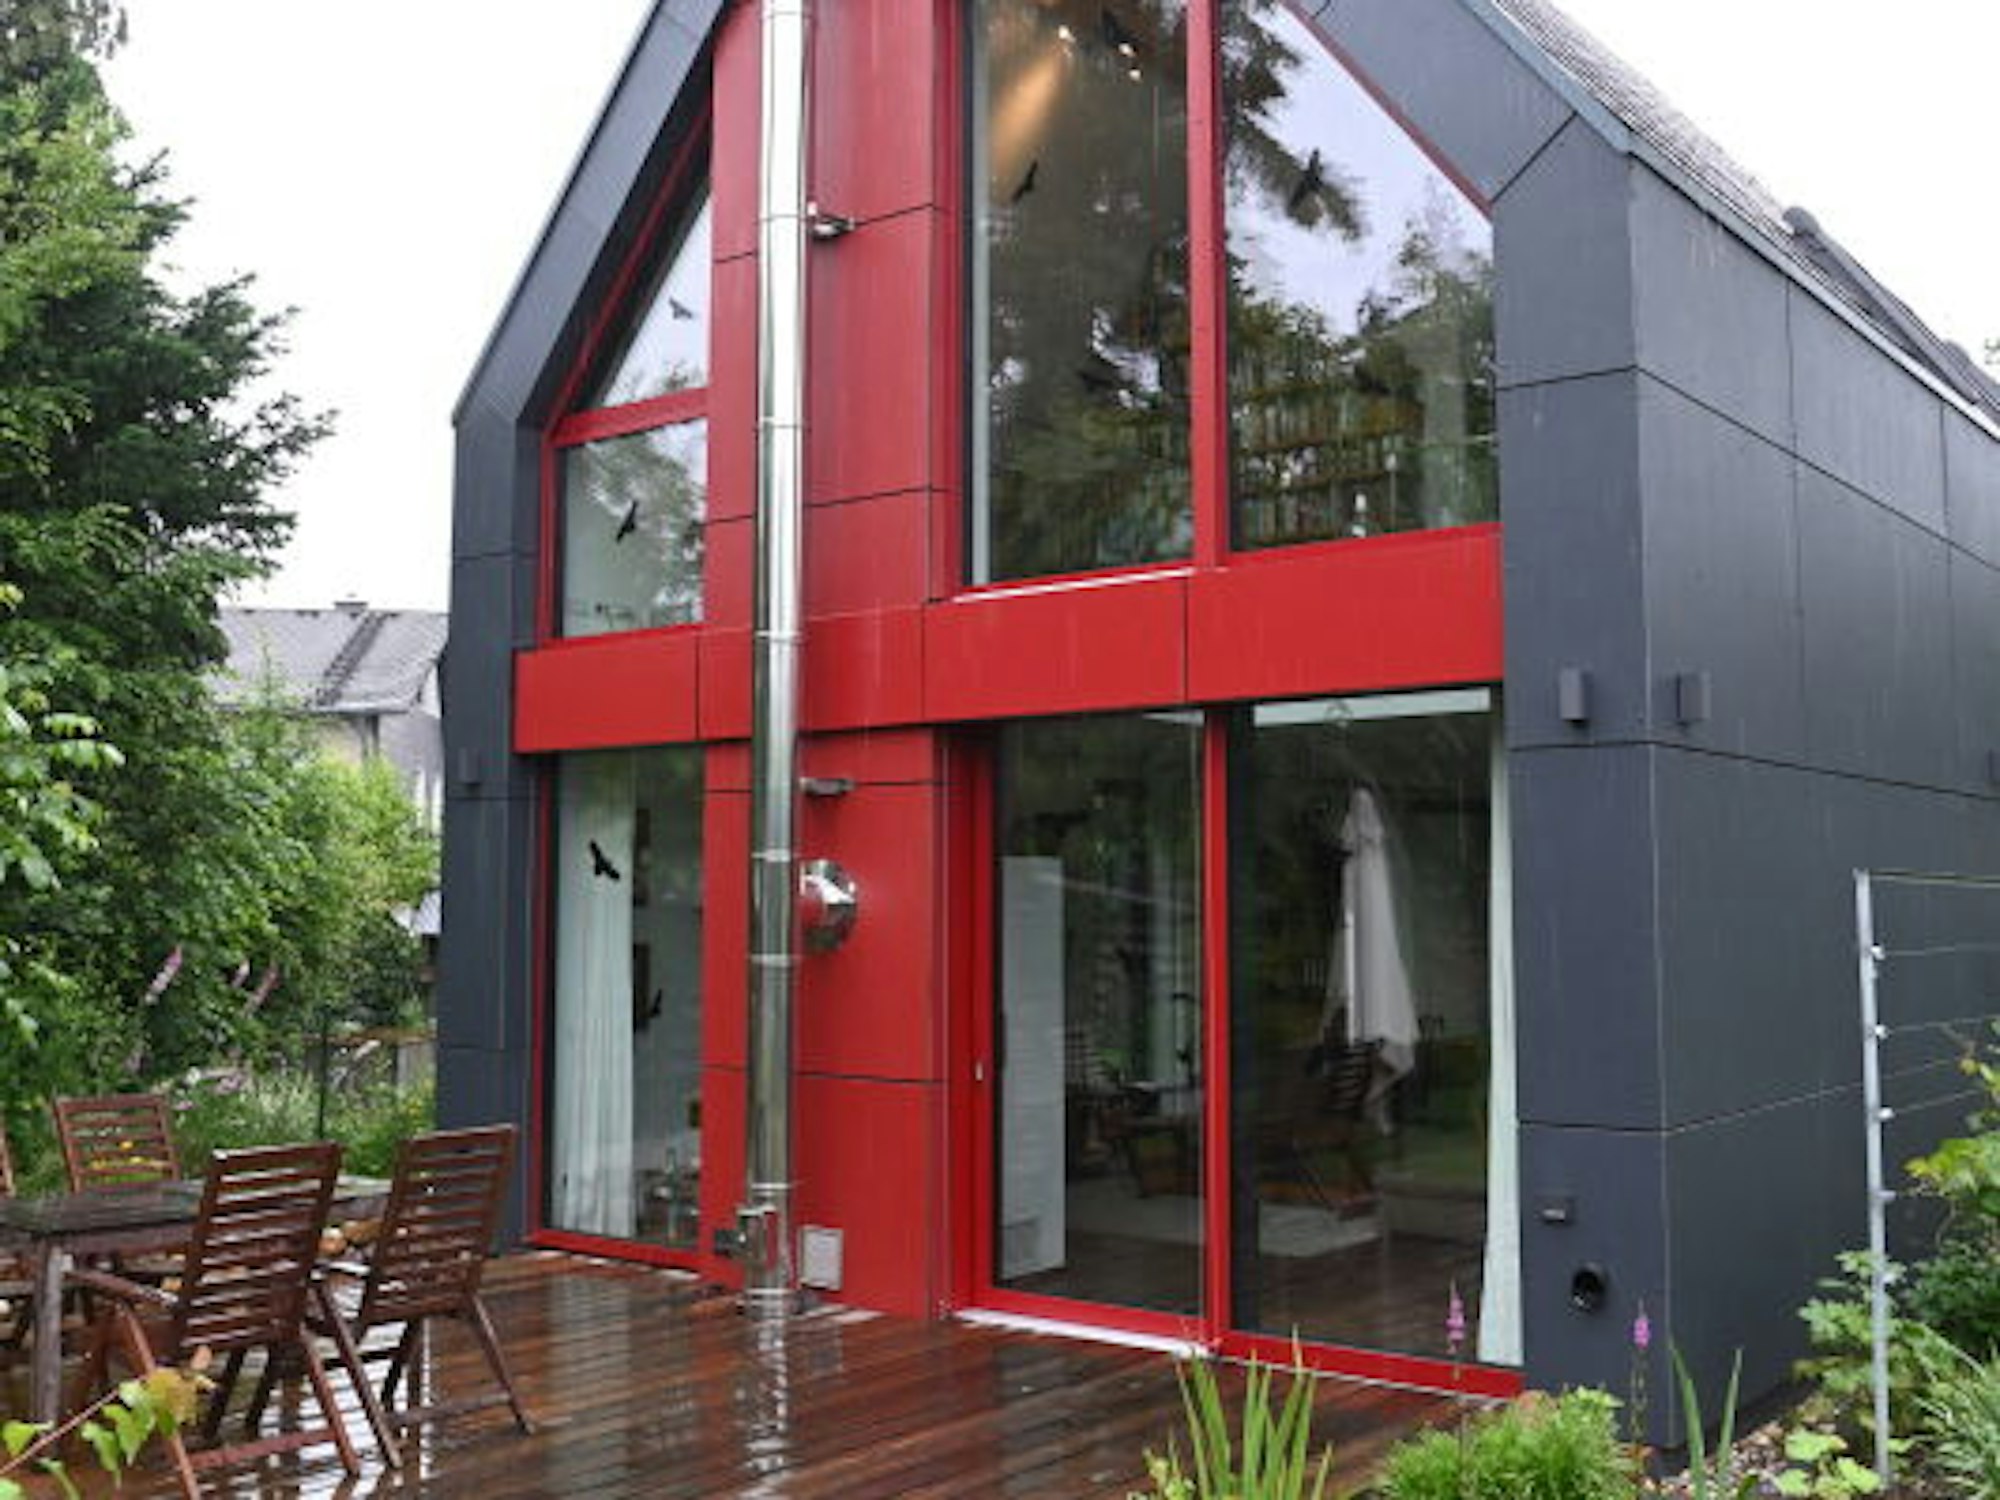 Dachform und graue Außenflächen knüpfen an bergische Architektur an, zugleich wirkt das Haus modern.